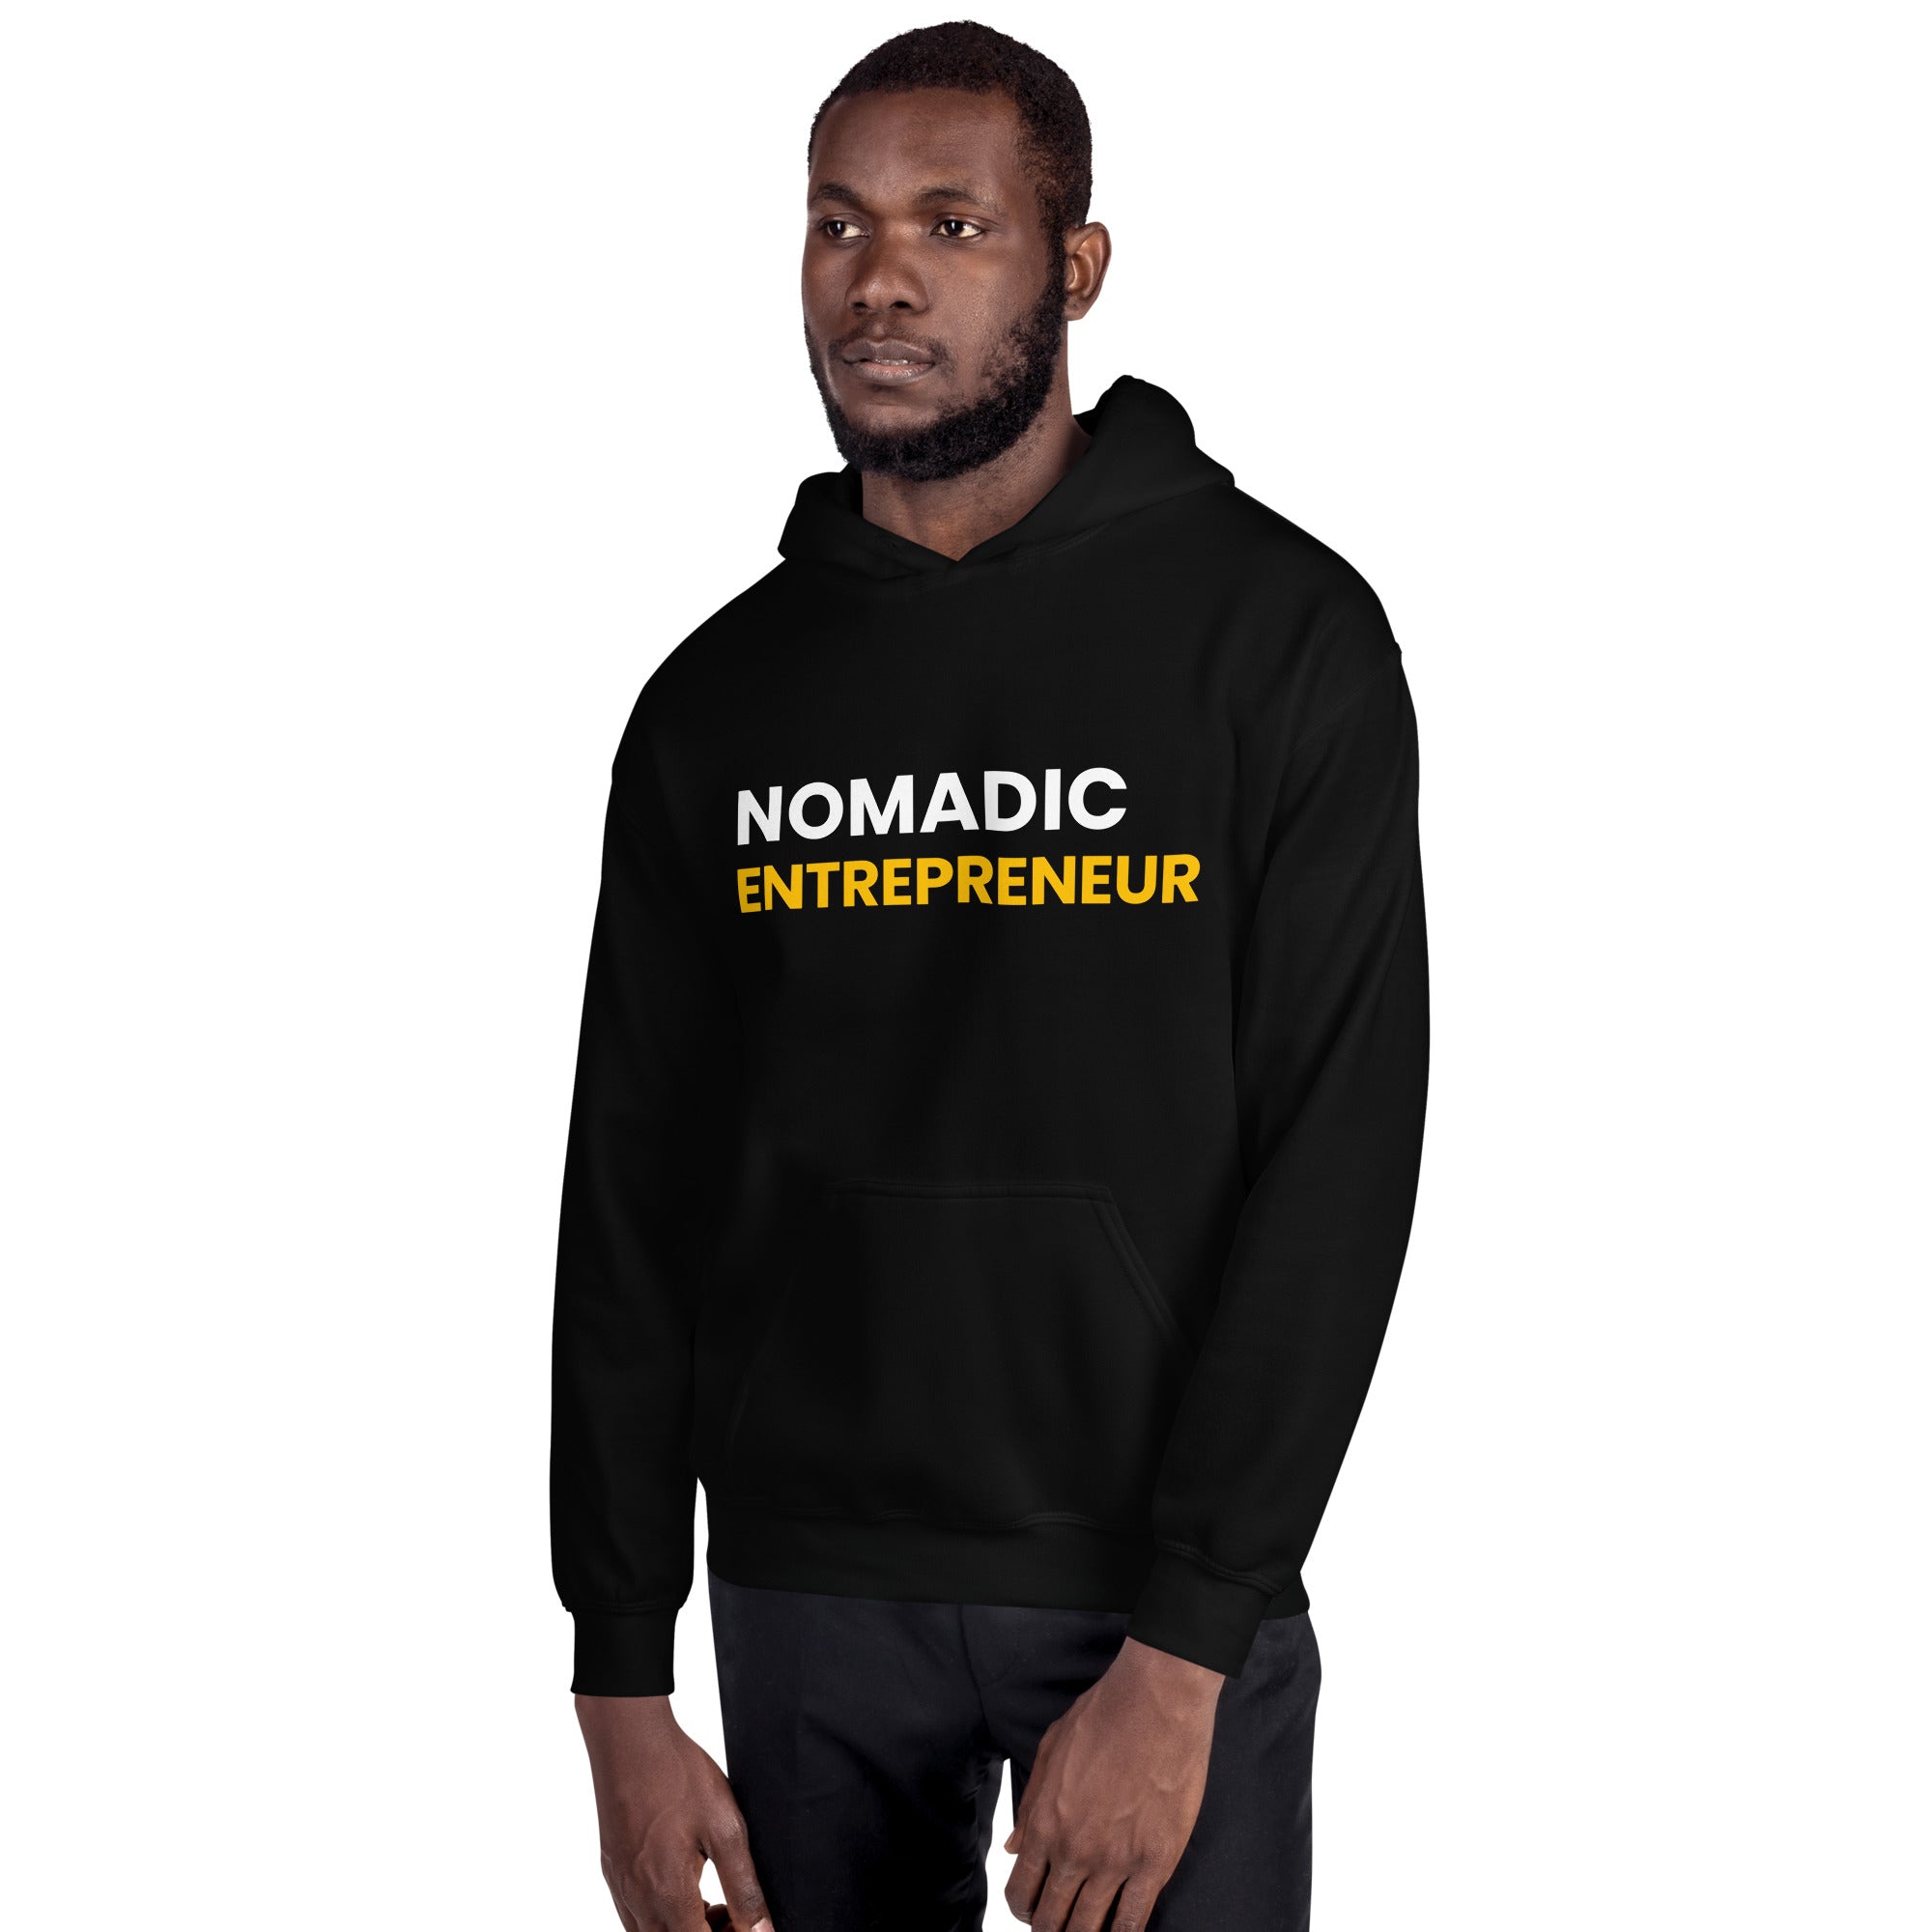 Nomadic Entrepreneur Unisex Hoodie